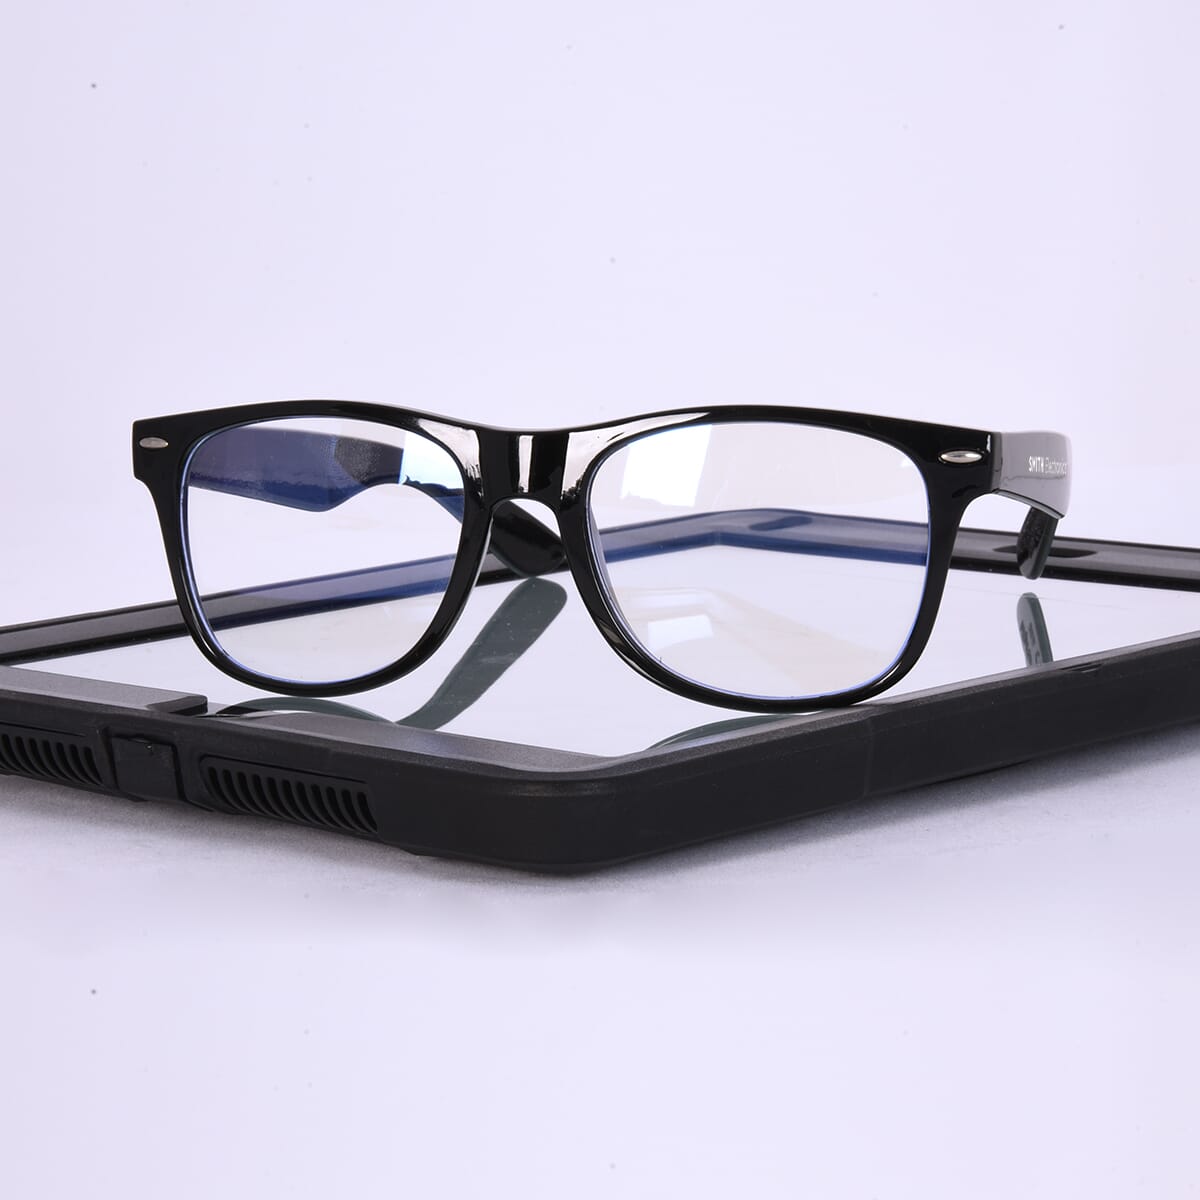 blue light blocker glasses